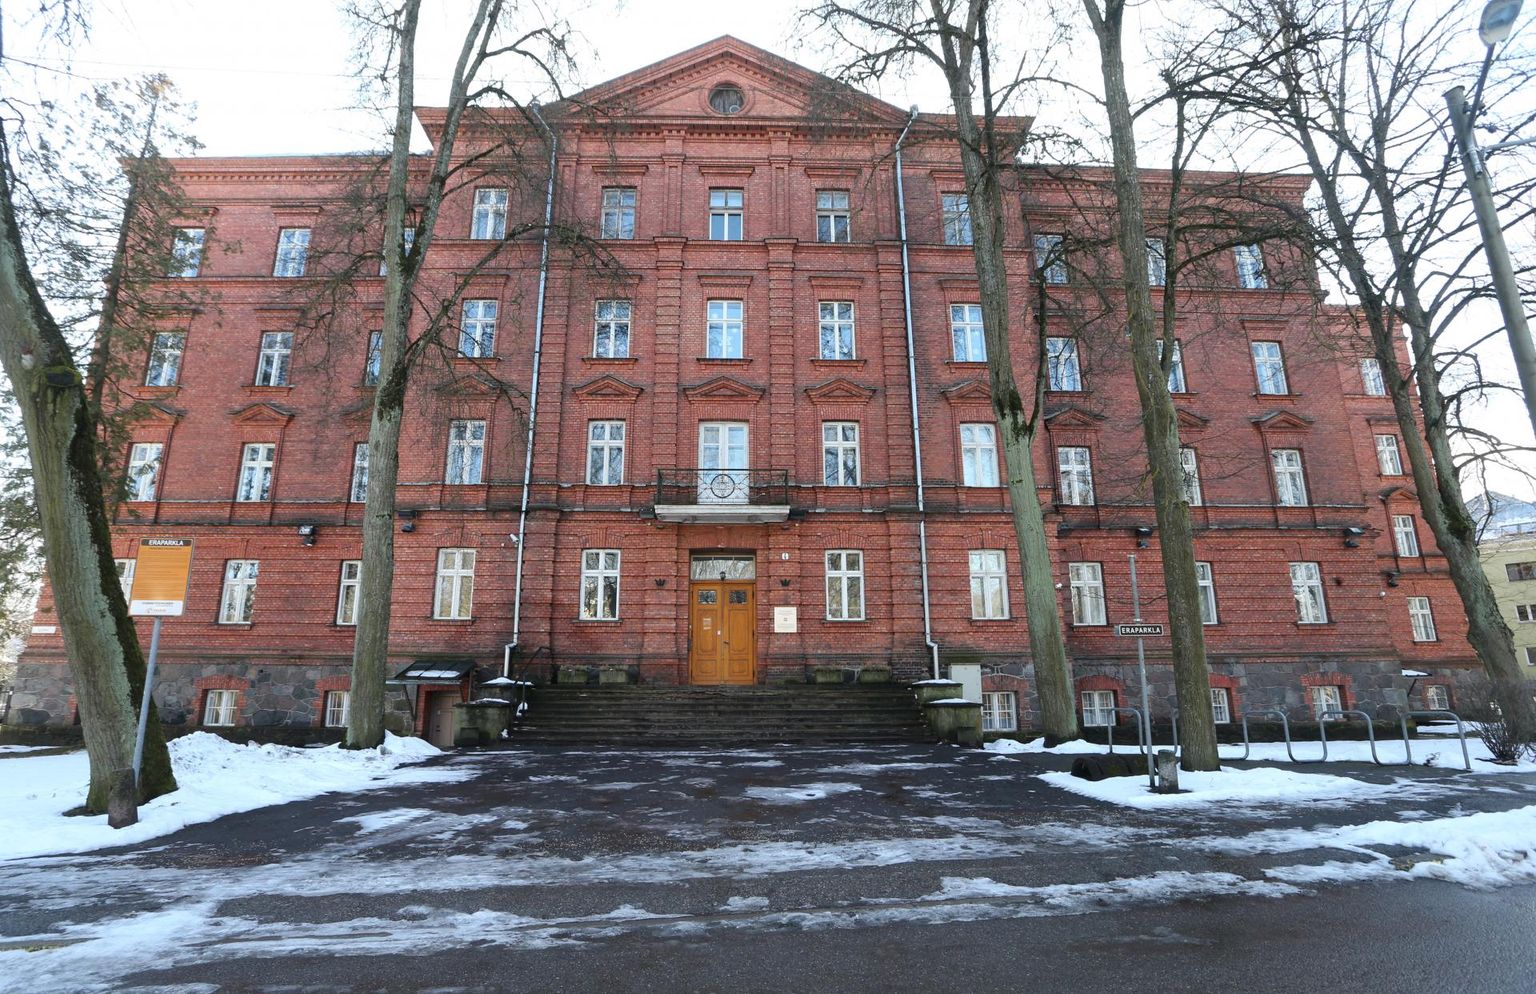 Tartu ülikool jätkab ka pärast Delta hoone valmimist Liivi 4 asuva rahvusarhiivi endise hoone rentimist. Tuleval aastal kolib sinna maailma keelte ja kultuuride kolledž, mille õppehoone Lossi 3 läheb remonti.